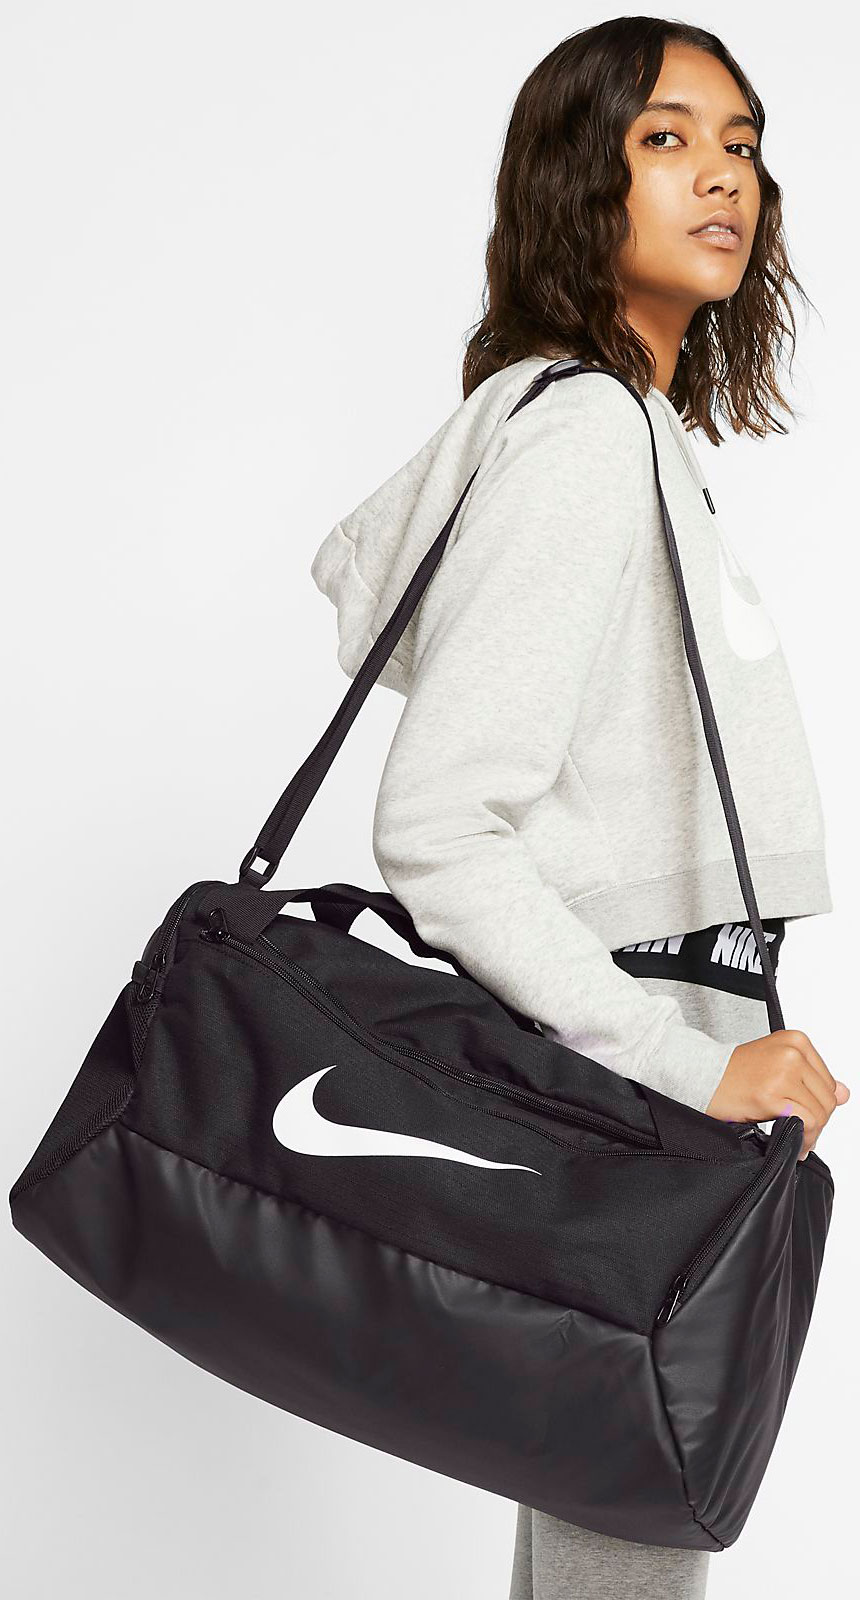 Спортивная сумка Nike Nk Brsla S Duff - 9.0 (41L) BA5957-010 (193145974258)  – в интернет-магазине ROZETKA